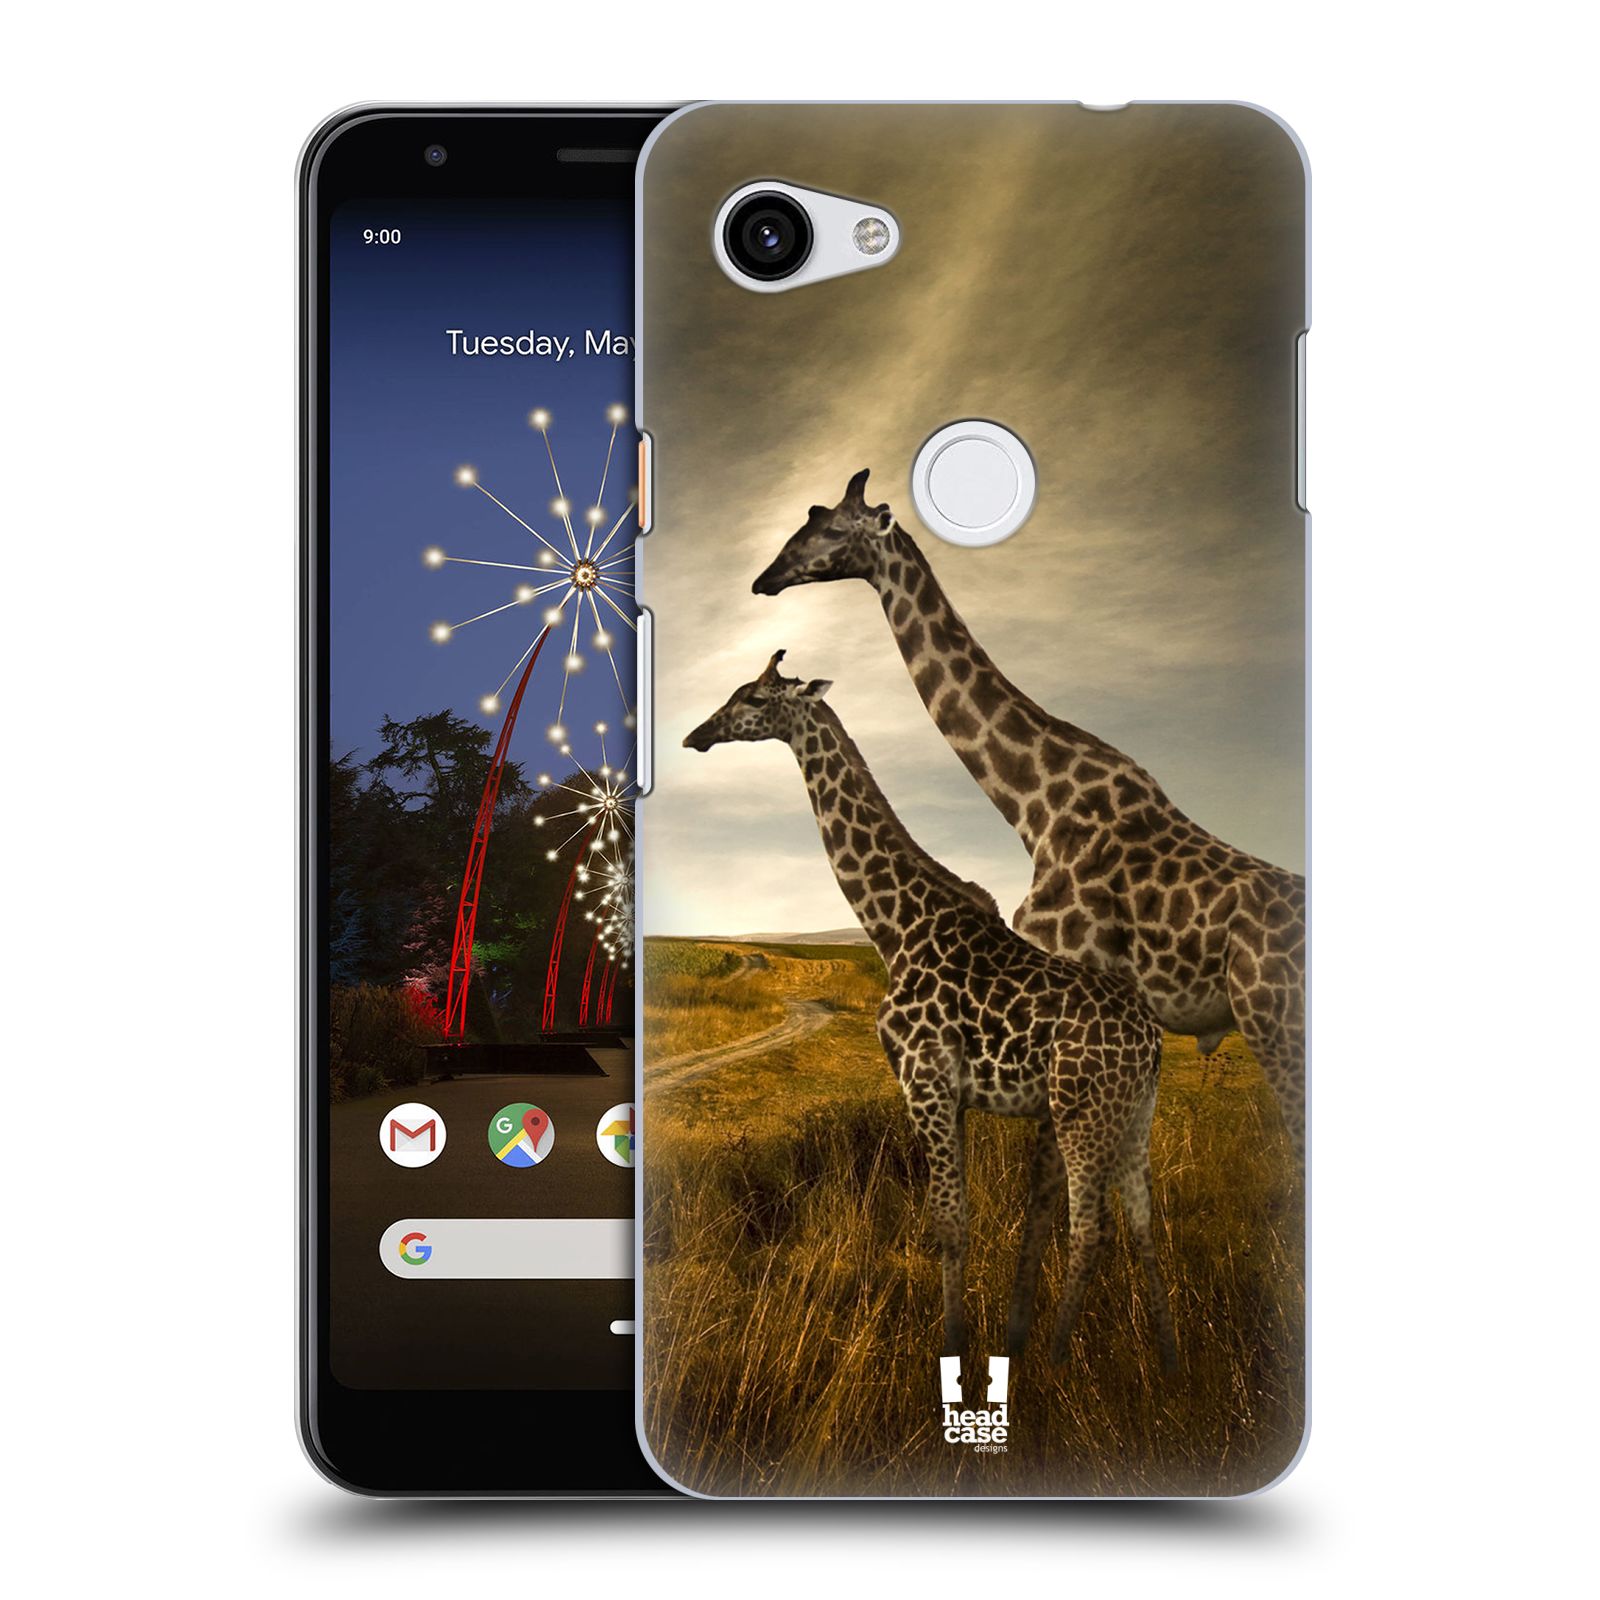 Zadní obal pro mobil Google Pixel 3a XL - HEAD CASE - Svět zvířat žirafy